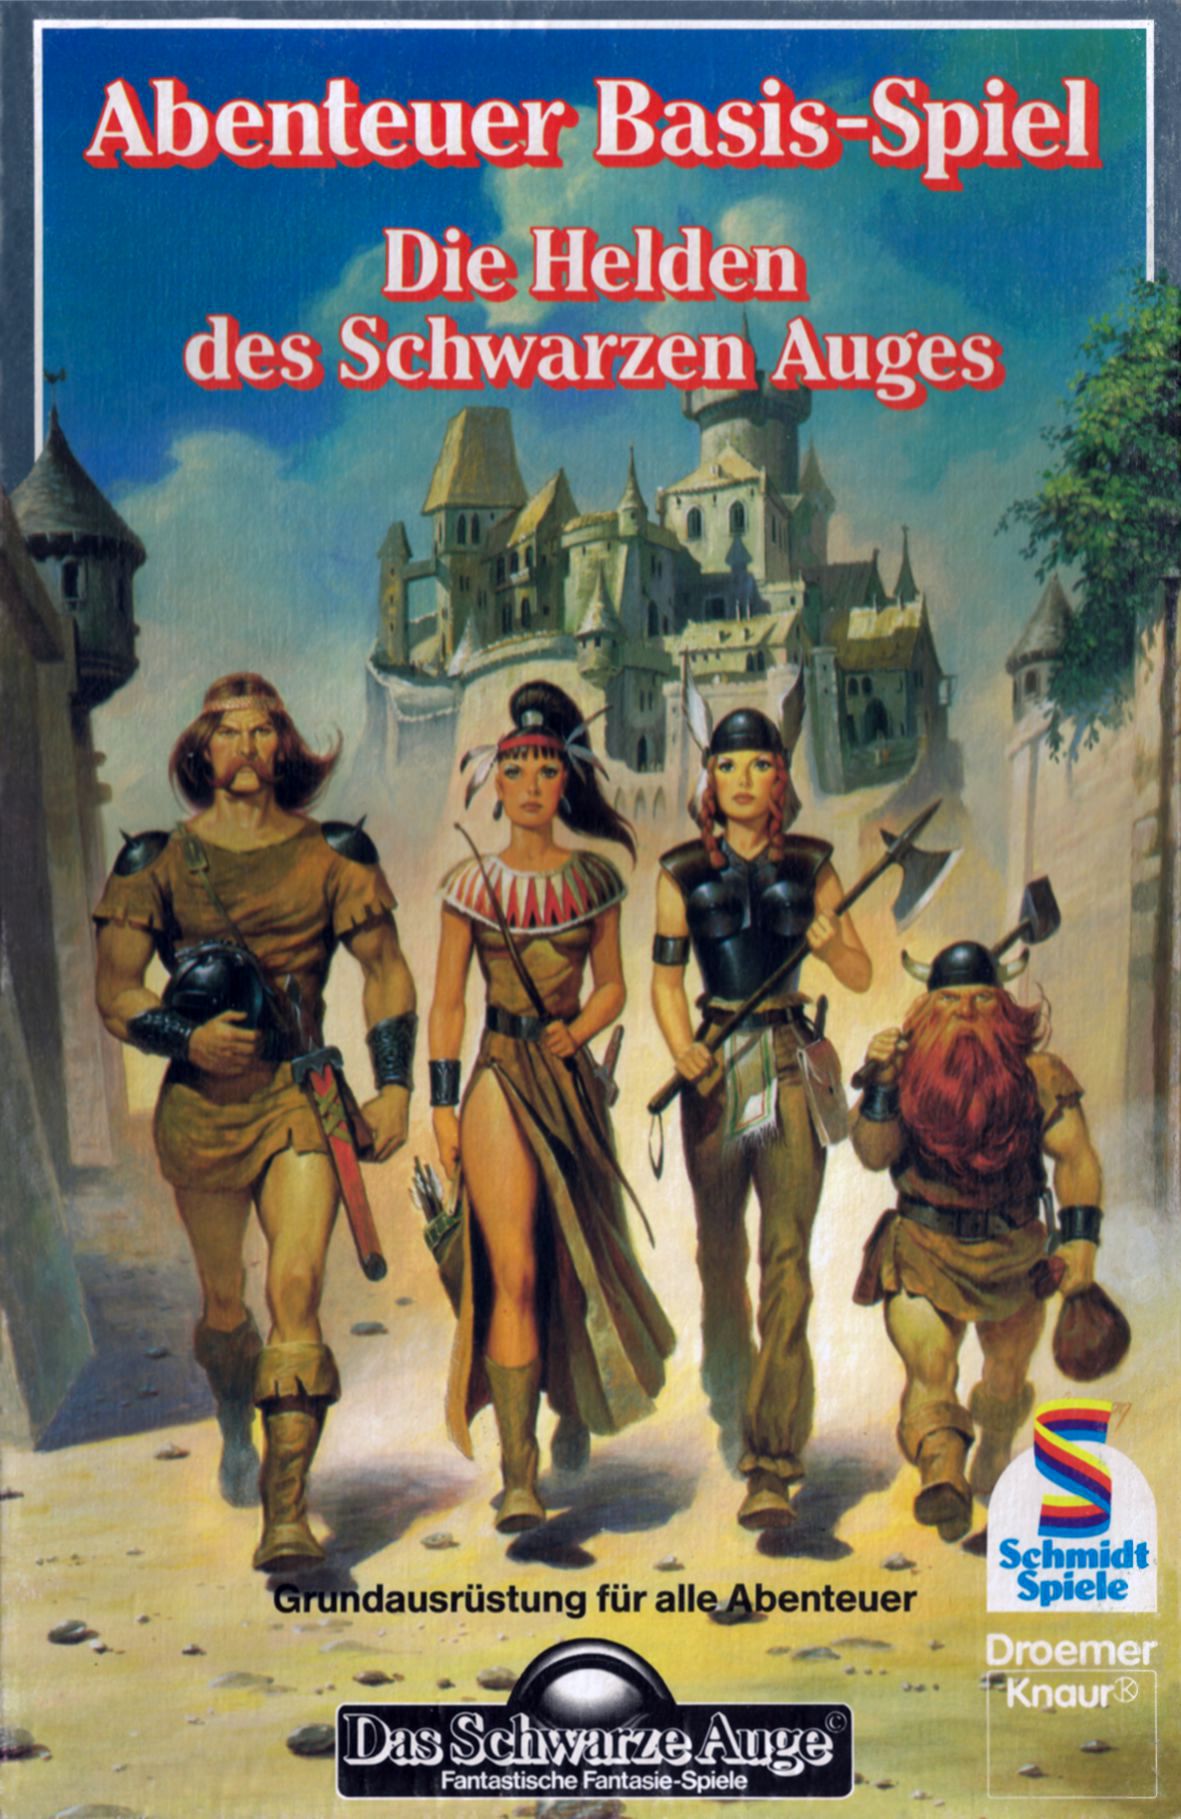 DSA2-Abenteuer-Basis-Spiel-Helden-Cover.jpg